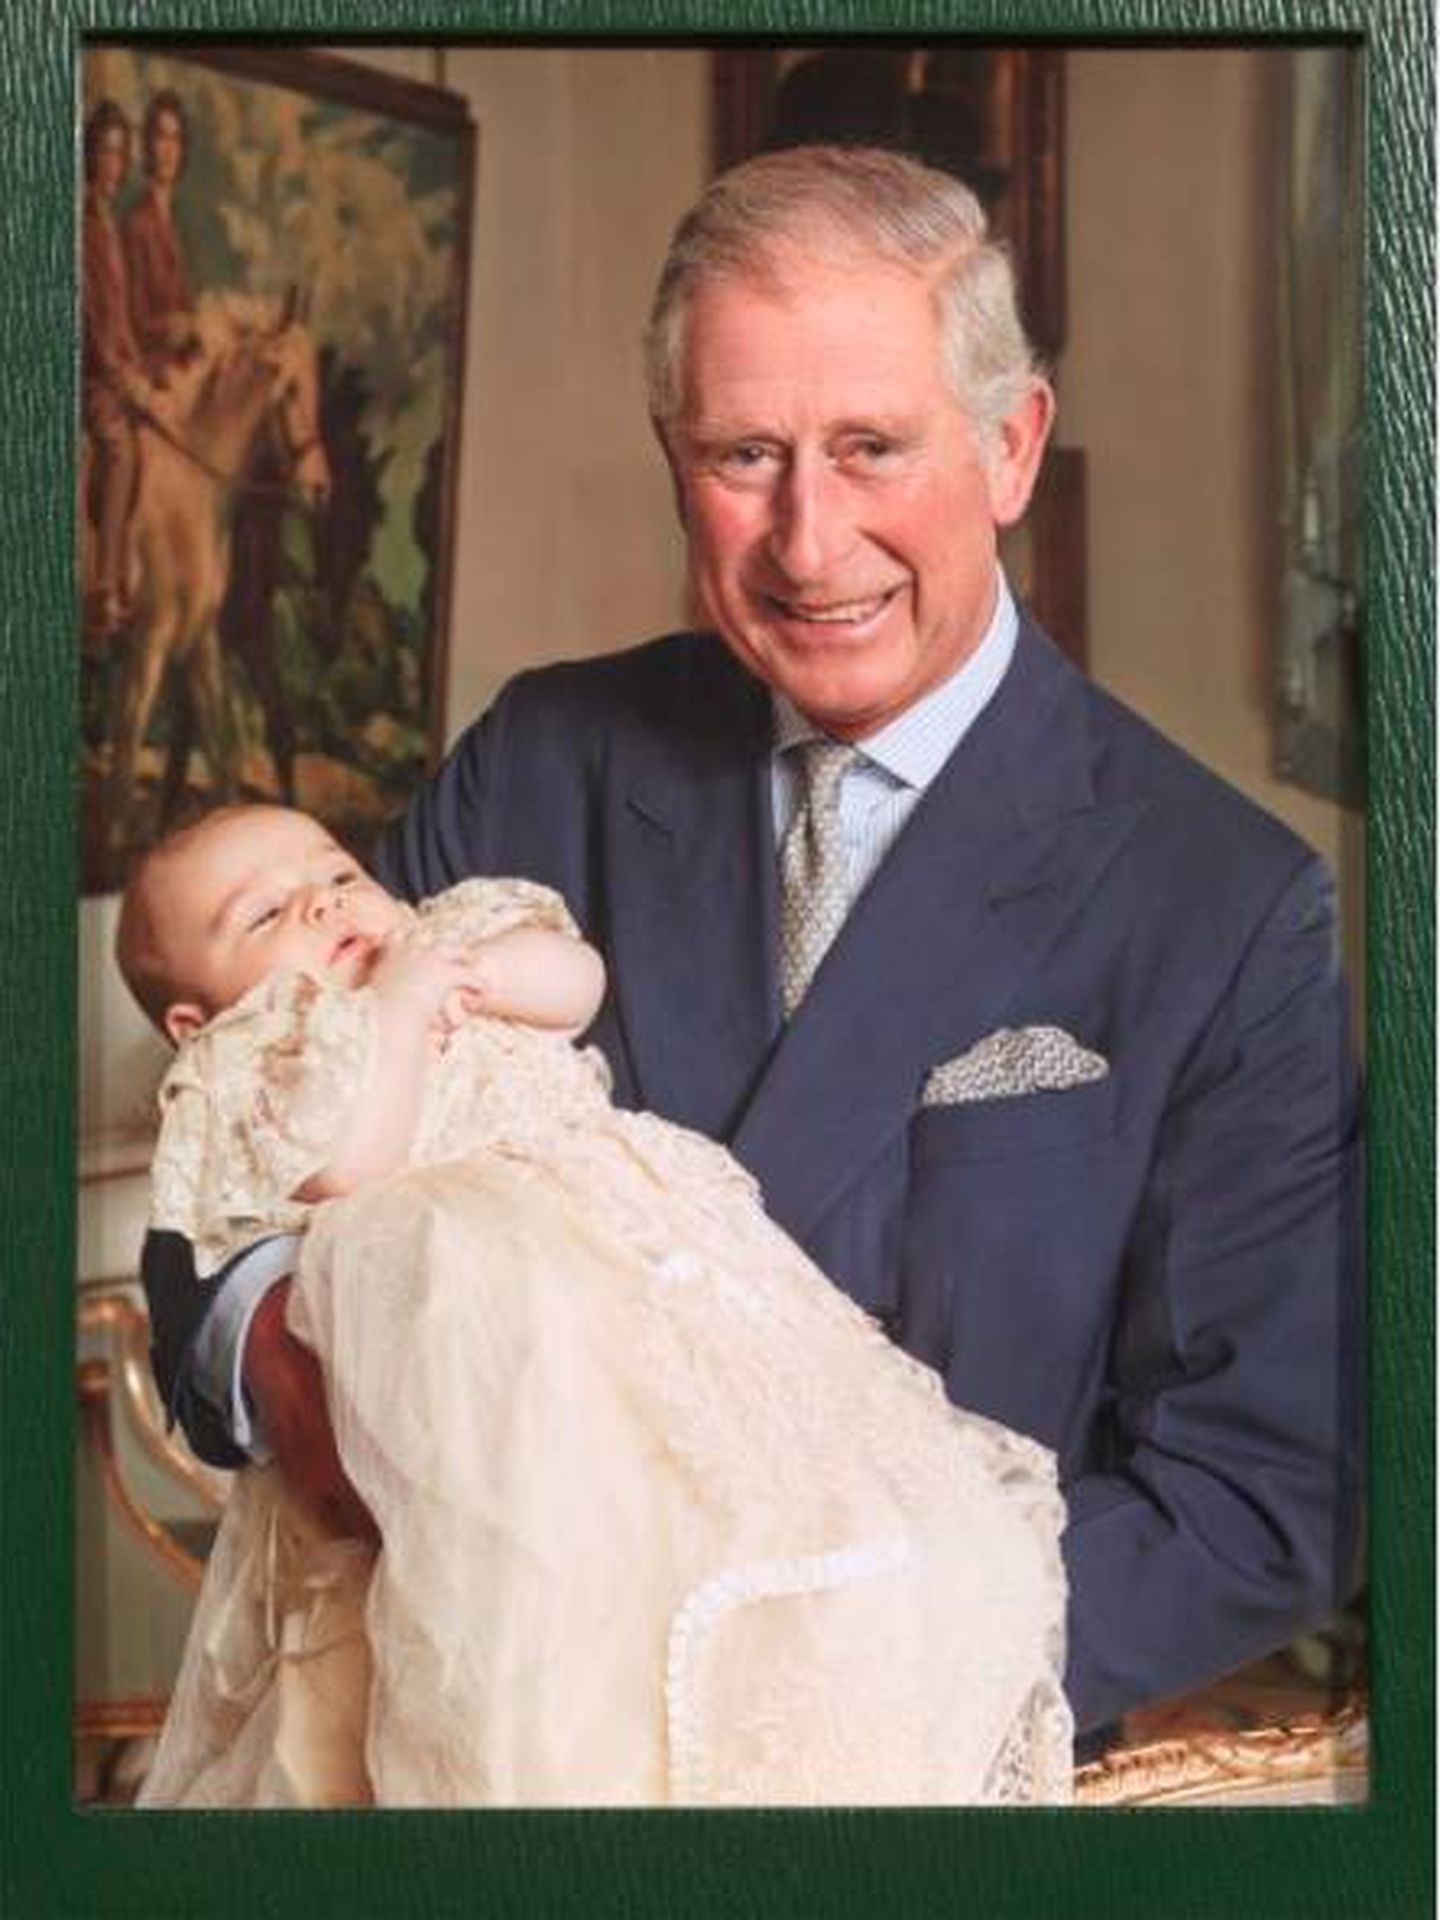 Carlos posa con el príncipe George. (Google Arts and Culture)